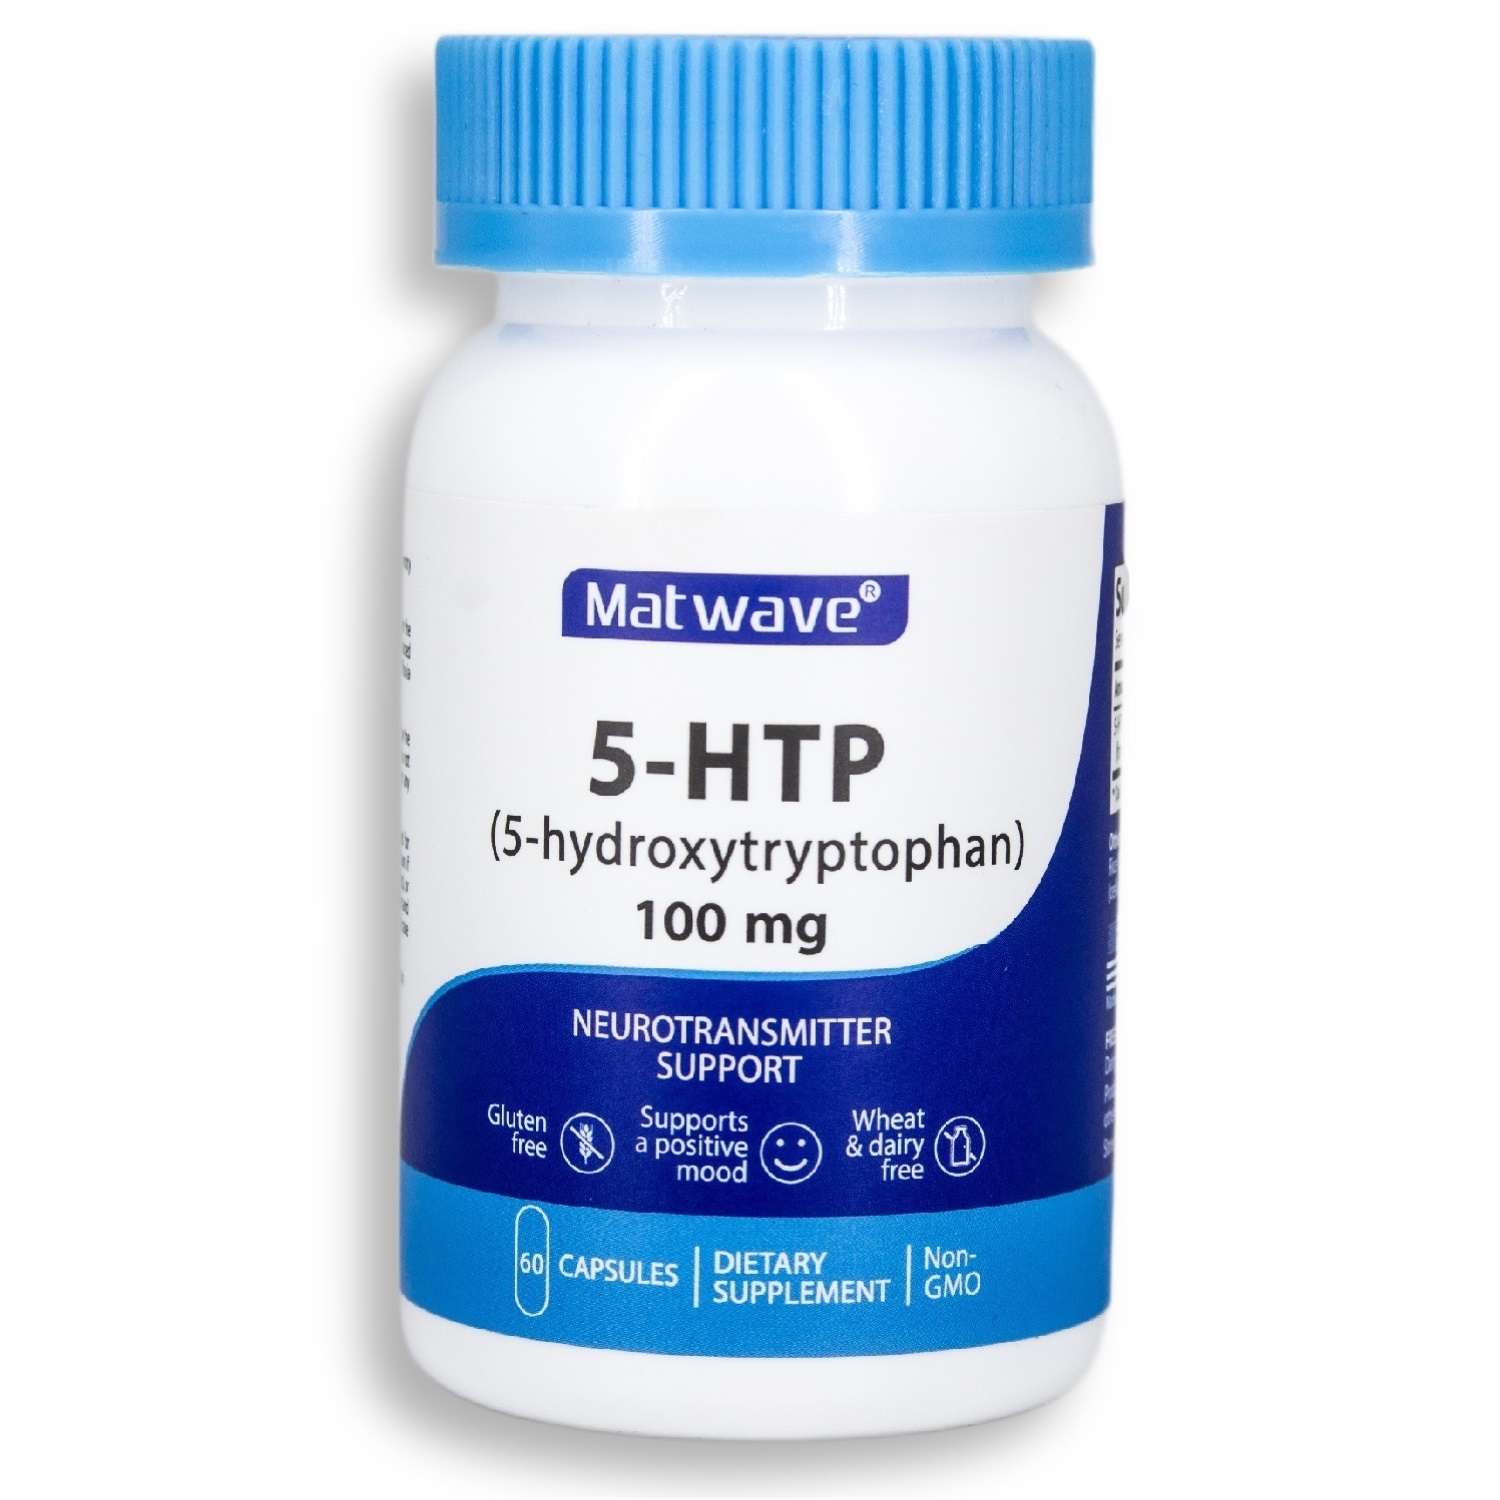 БАД Matwave 5-HTP 100 mg 5-гидрокситриптофан 60 капсул комплект 3 банки - фото 2